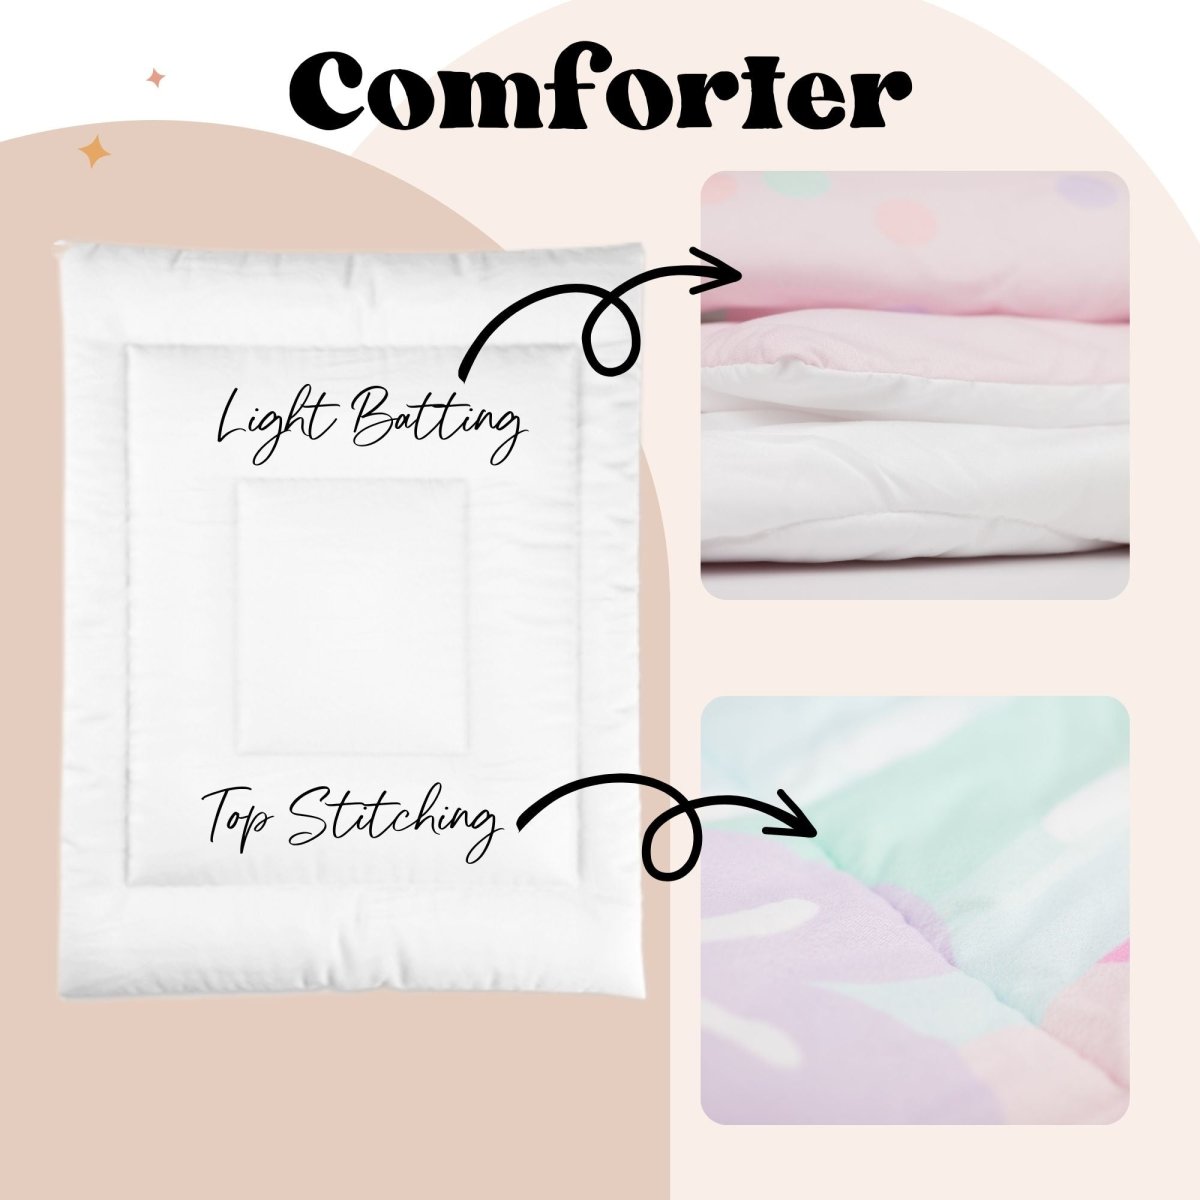 Whisper Floral Kids Bedding Set (Comforter or Duvet Cover) - gender_girl, text, Theme_Floral